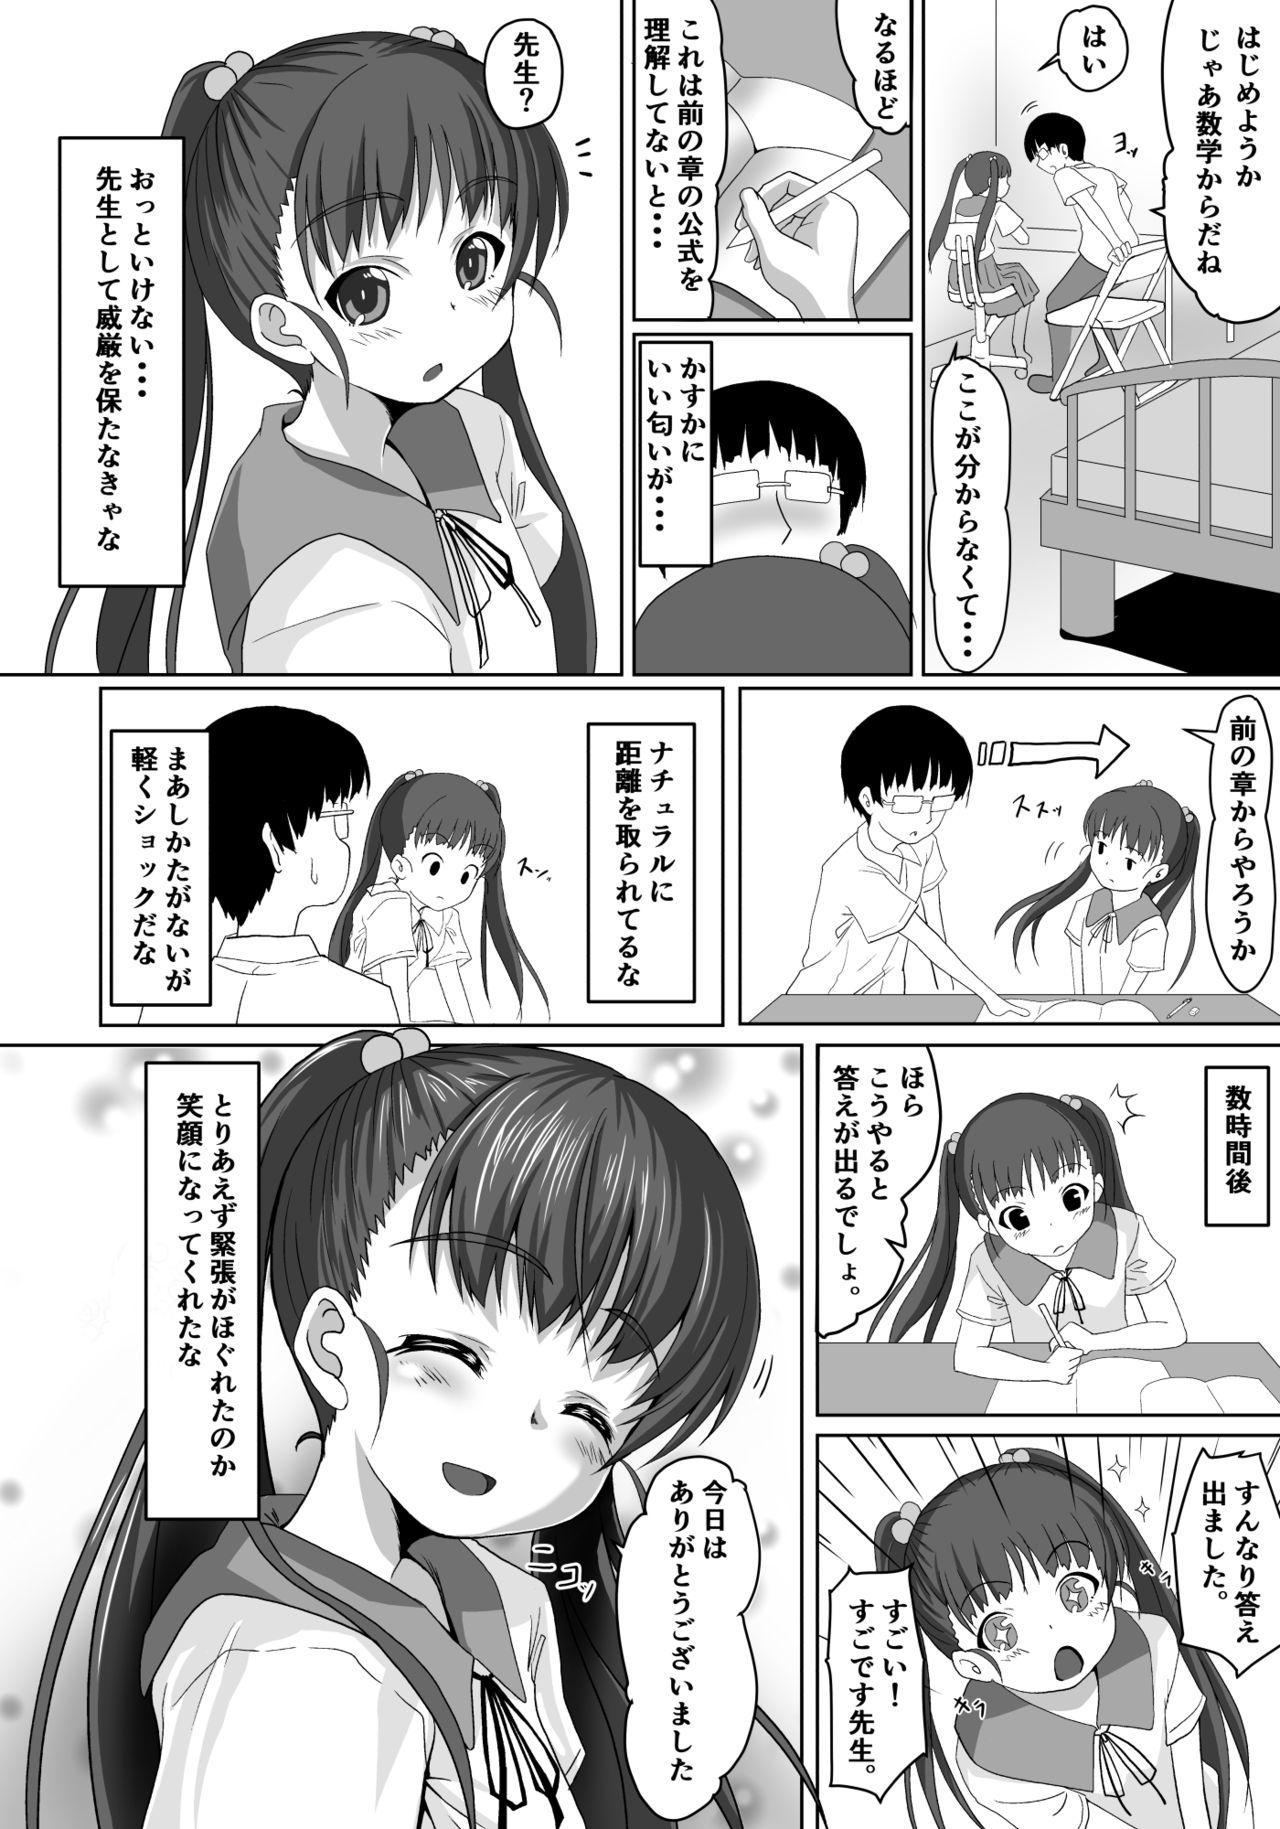 Sentones Sensei! Tokubetsu Jisshuu Shimasho! Sofa - Page 5